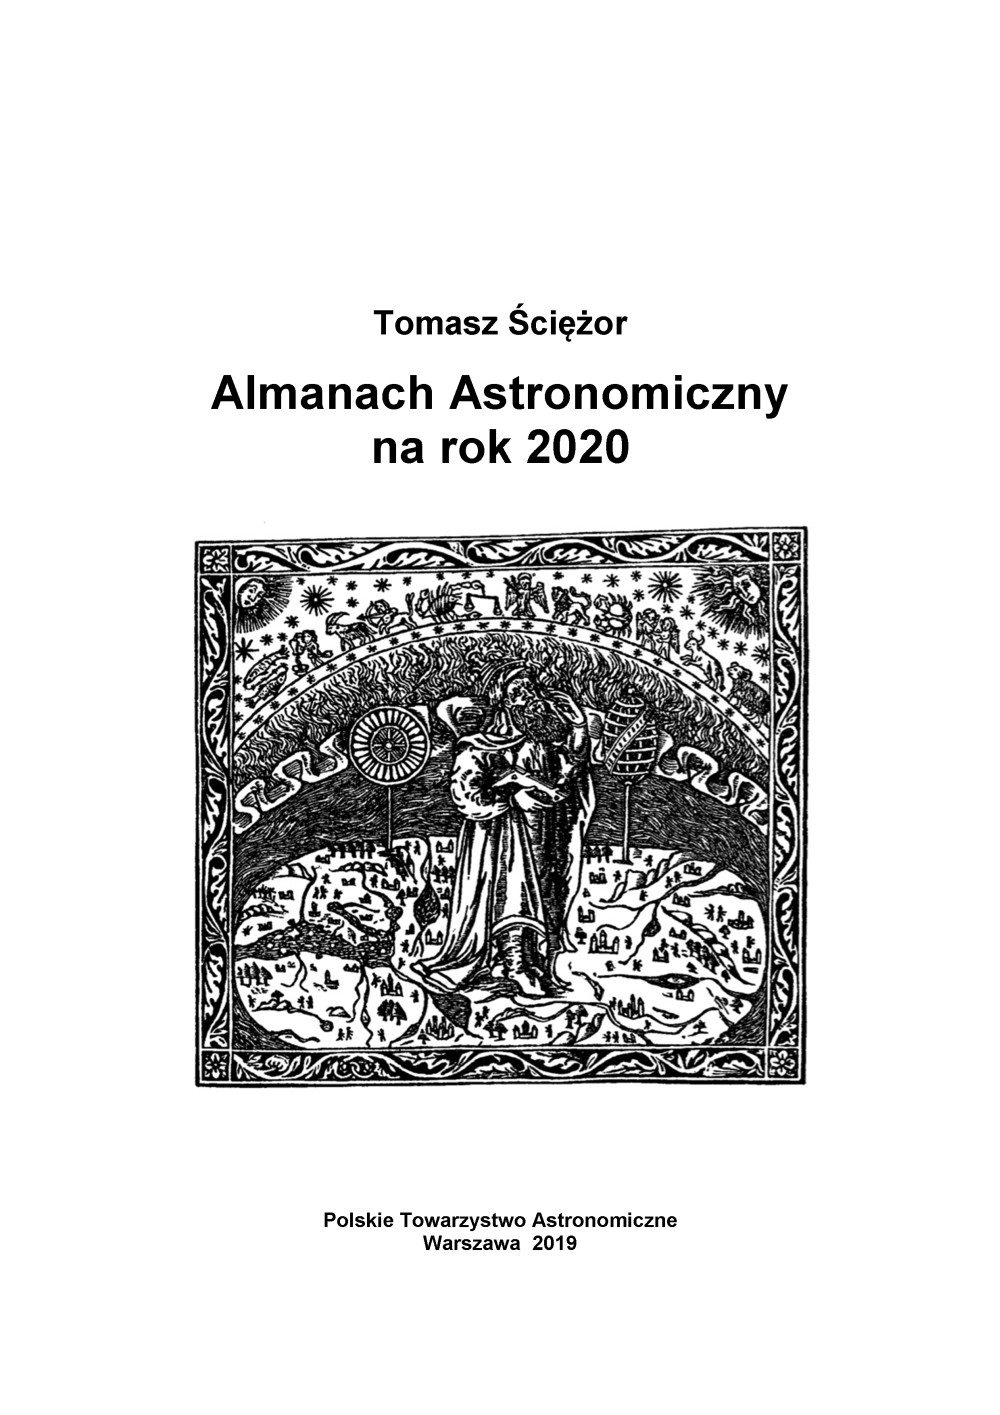 Almanach astronomiczny 2020